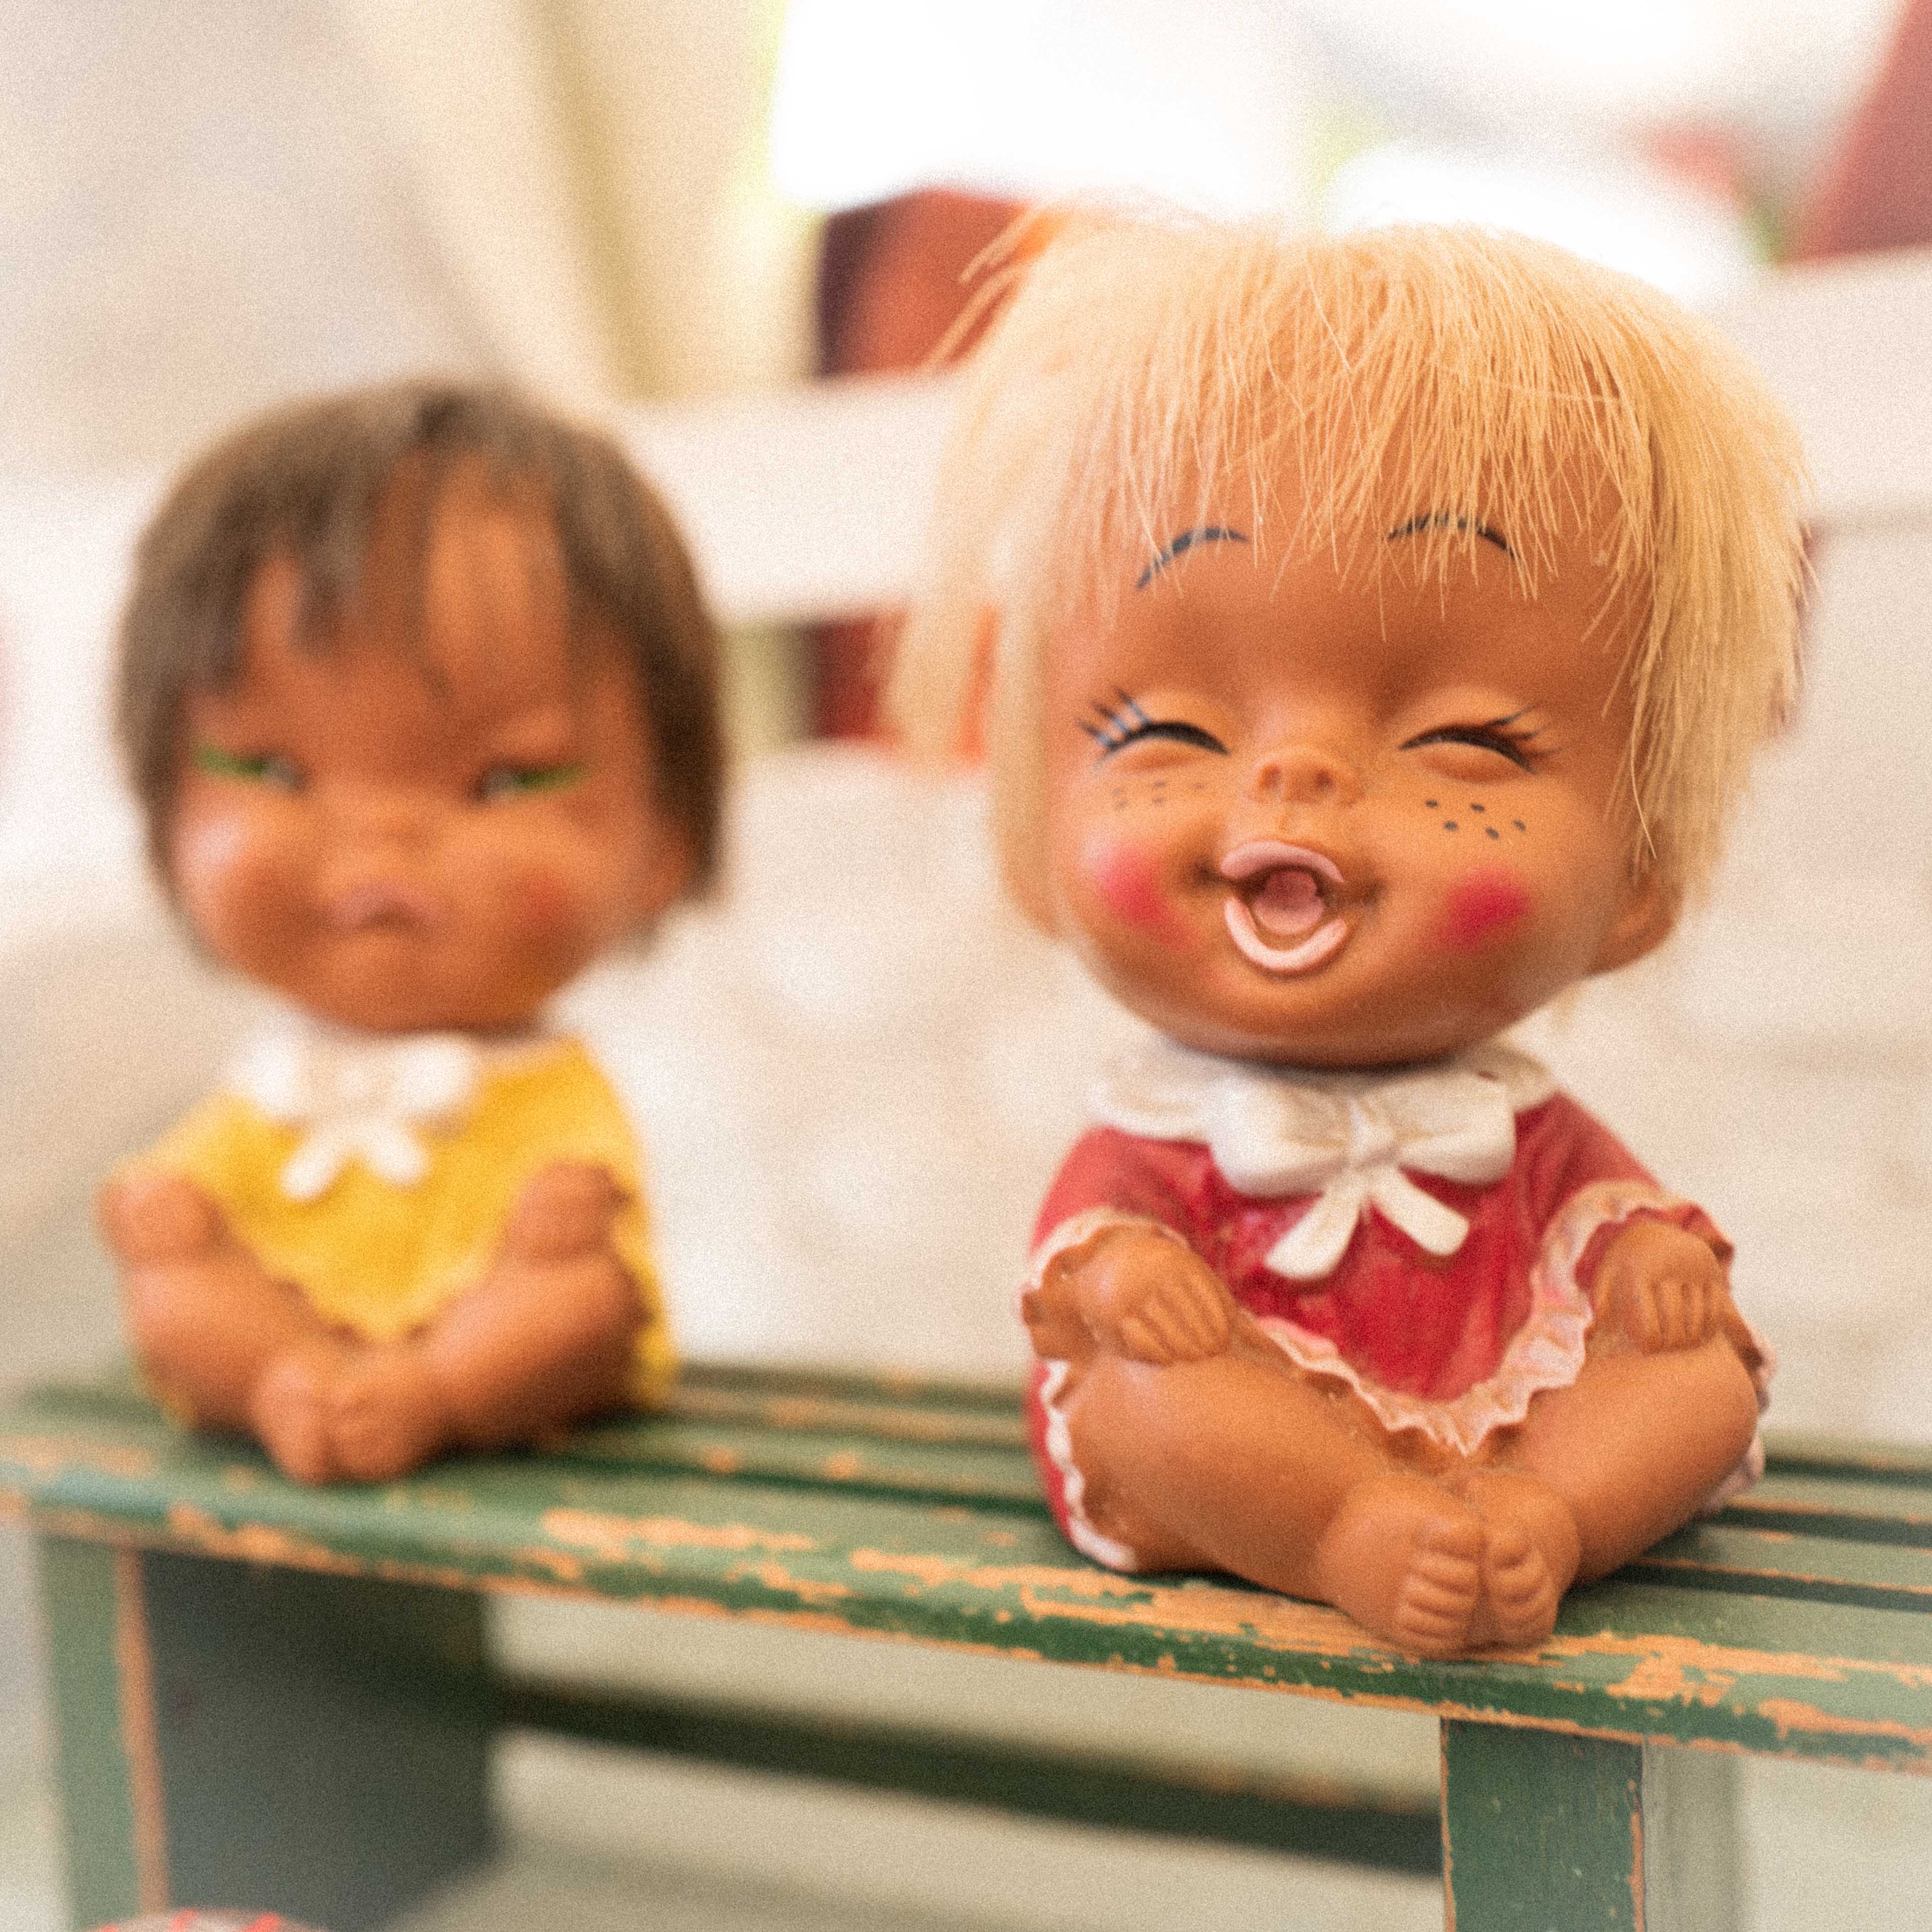 Das Bild zeigt zwei kleine Figuren, die auf einer grünen, verwitterten Bank sitzen. Eine Figur trägt ein gelbes Outfit und die andere ist in Rot mit weißen Details gekleidet. Eine von den Puppen hat ein lachendes Gesicht, diese ist scharf zu sehen, die andere schmolllt und ist unscharf zu sehen. Die Puppen sollen zwei Kinder darstellen.